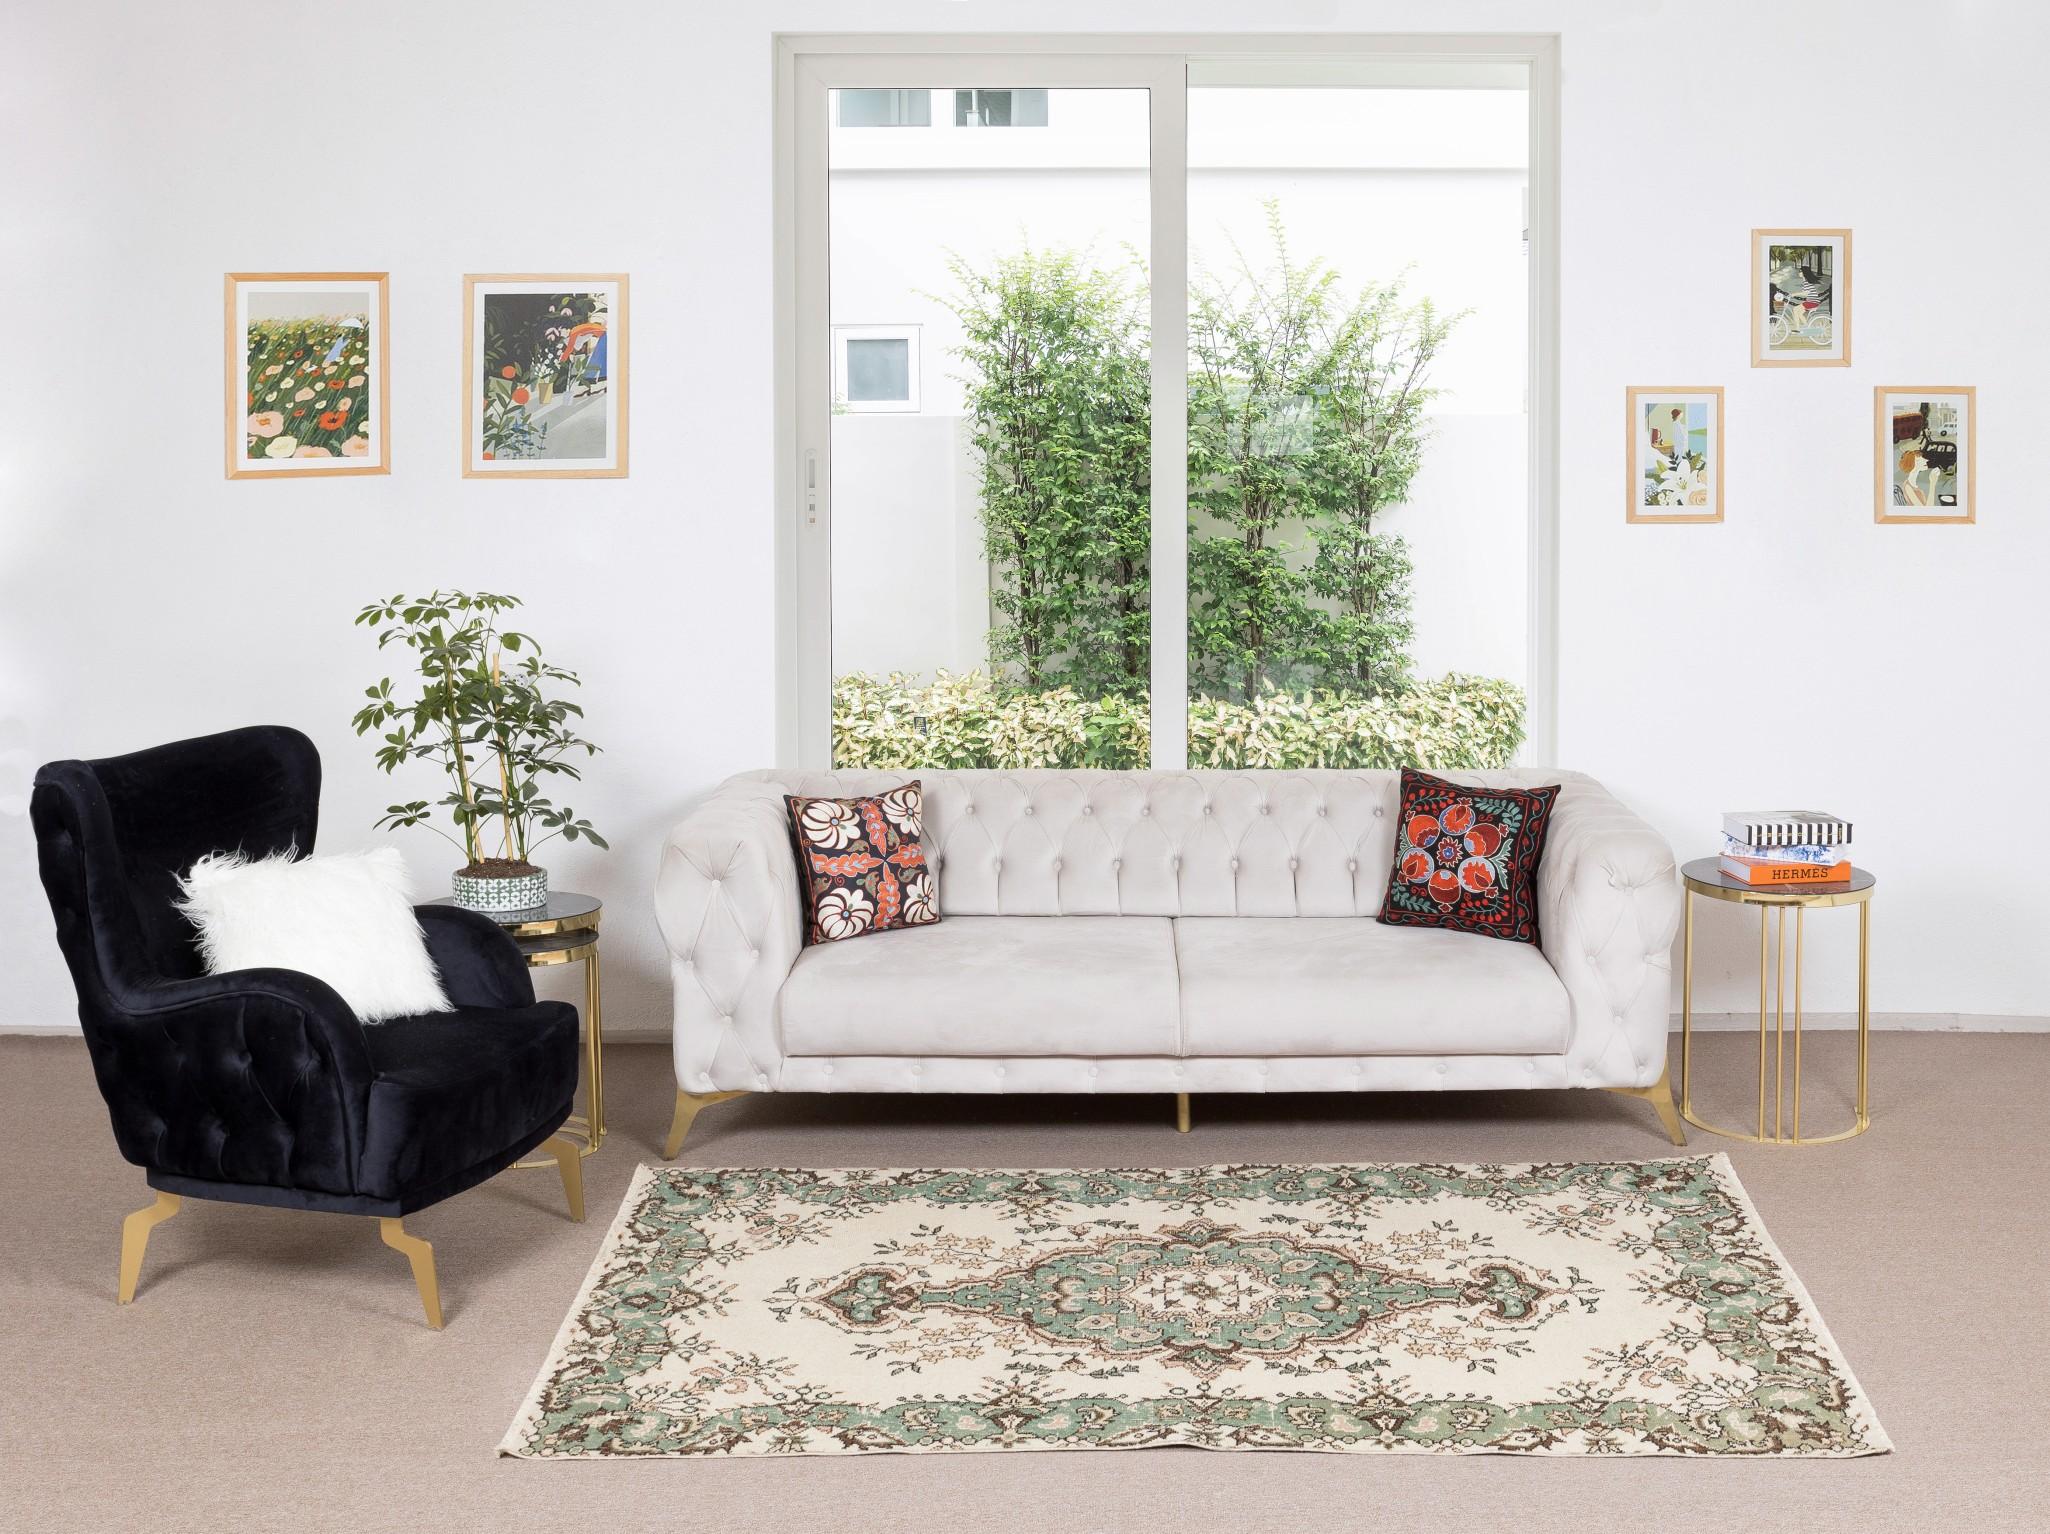 Unsere sonnenverblassten Teppiche sind allesamt einzigartige, handgeknüpfte, 50-70 Jahre alte Vintage-Stücke. Jeder von ihnen zeichnet sich durch eine einzigartige, handgefertigte Ästhetik aus, die aus der jahrhundertealten türkischen Teppichweberei